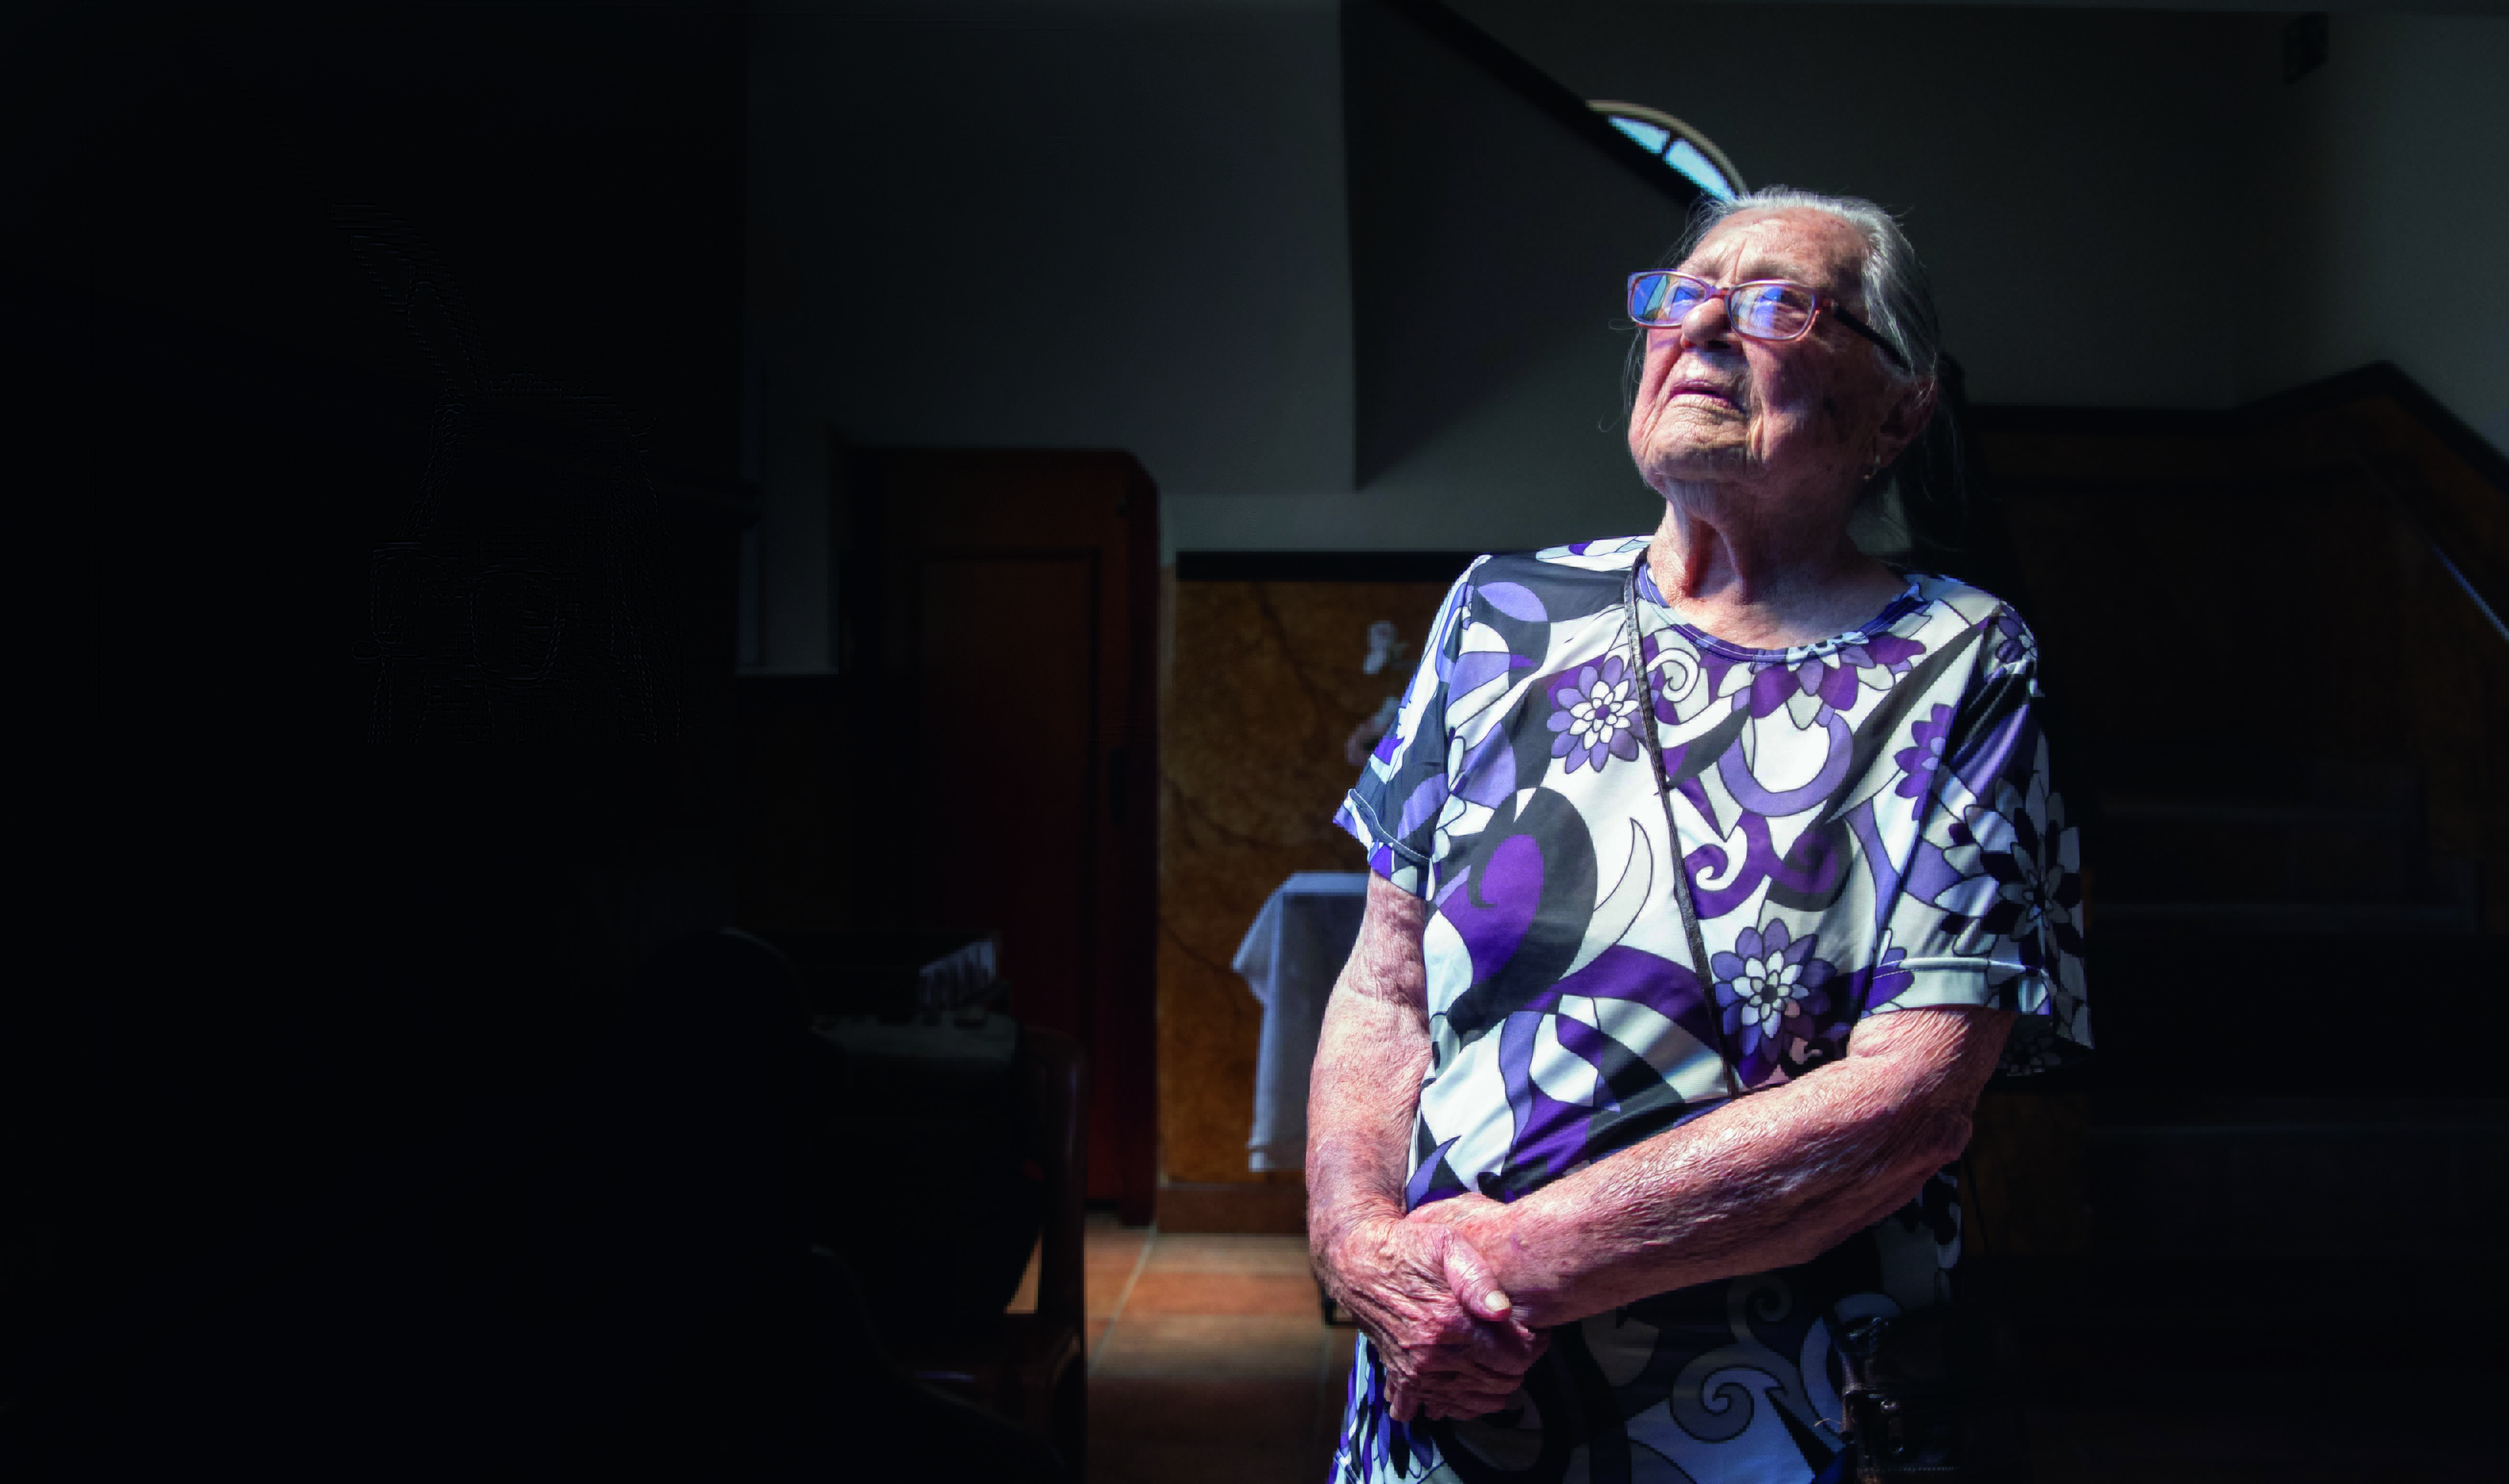 Imagem mostra mulher idosa com os braços cruzados sobre a barriga, em foto escura.